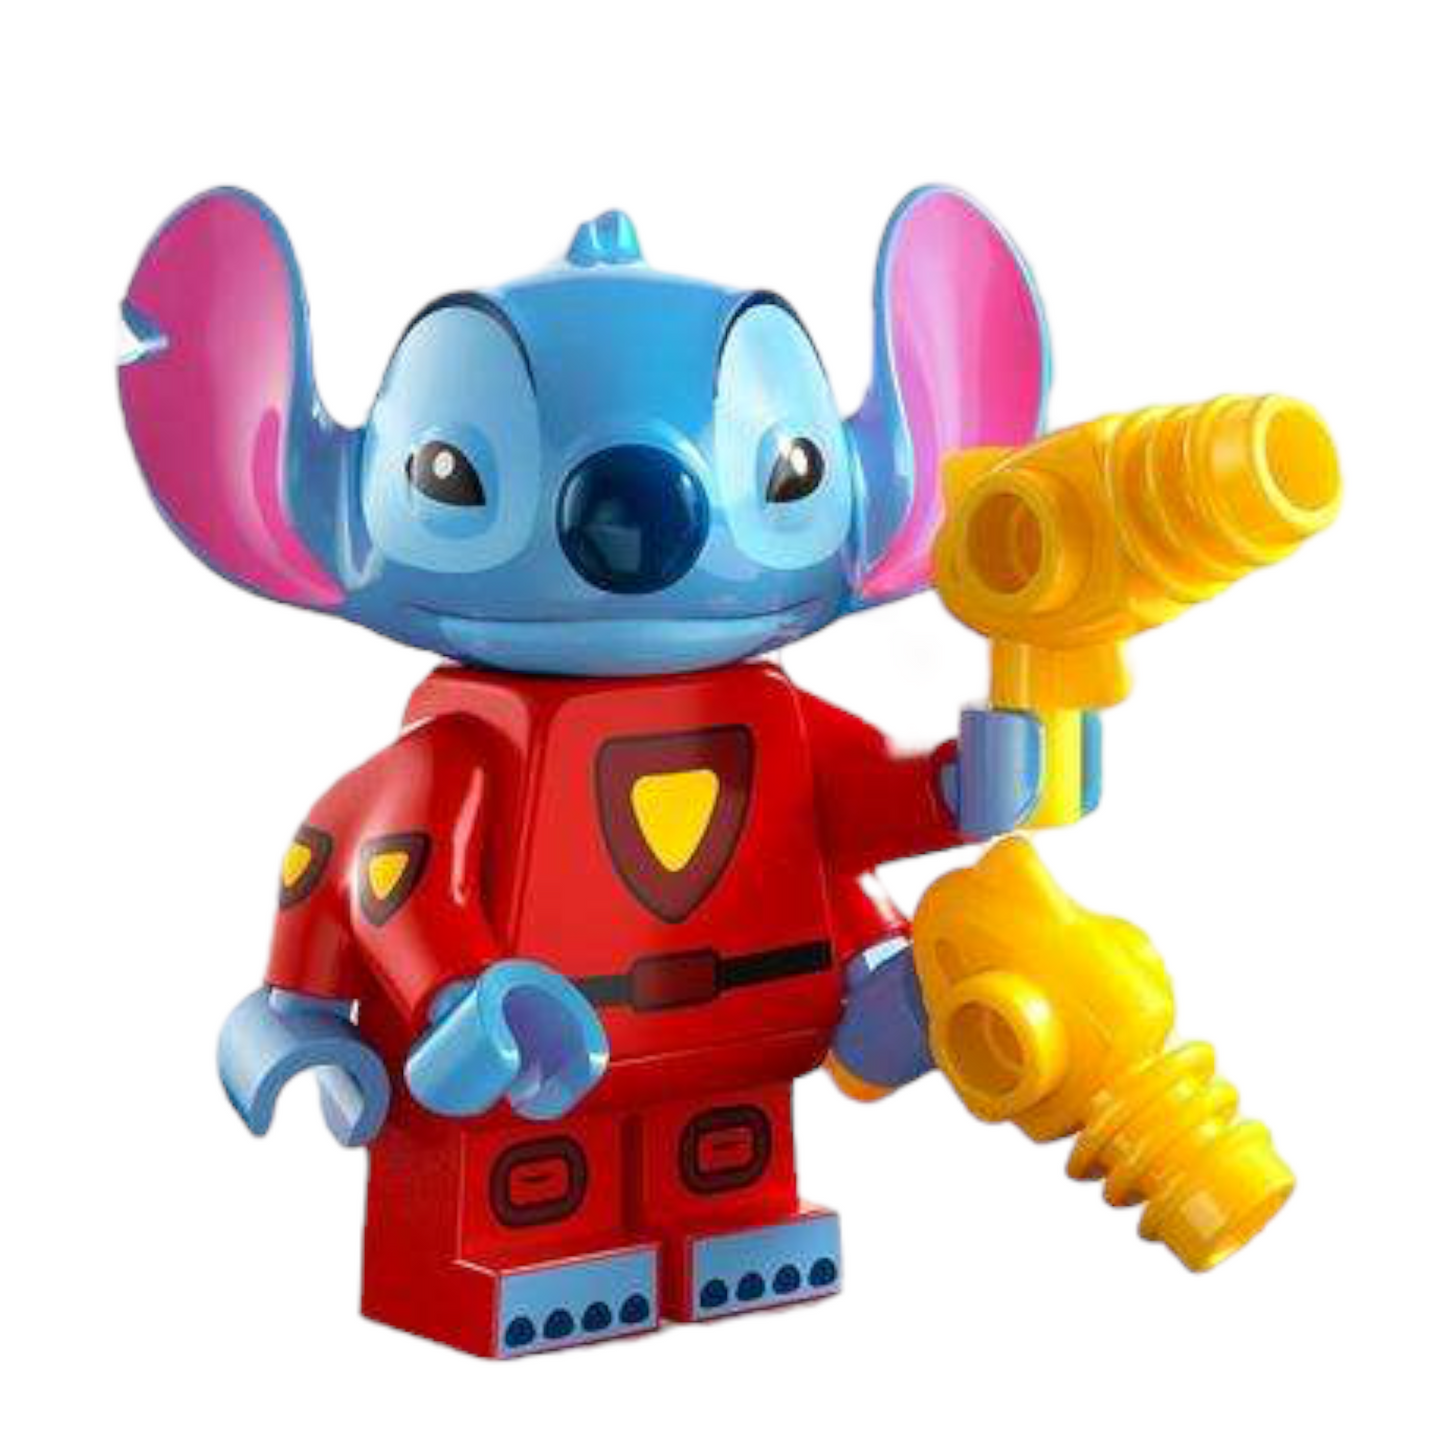 LEGO 71038 Disney - Stitch